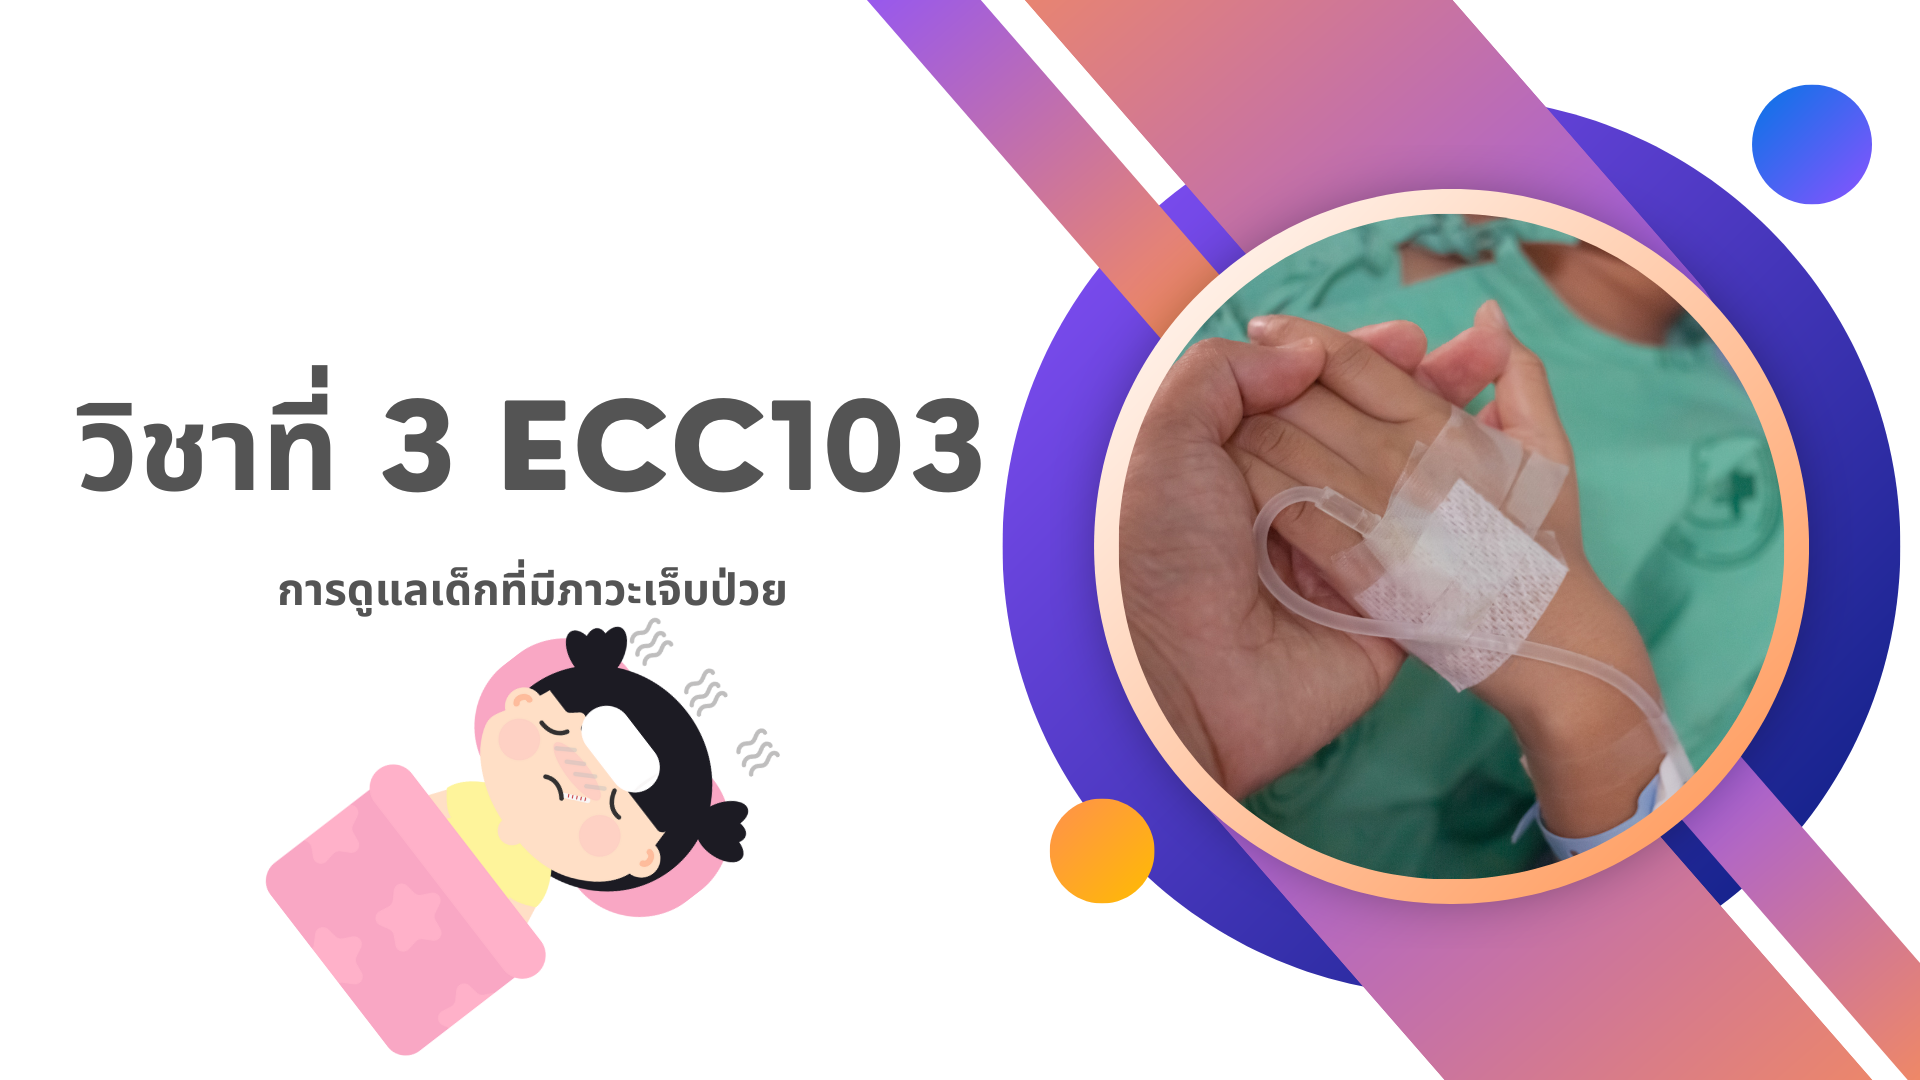 วิชาที่ 3 ECC103: การดูแลเด็กที่มีภาวะเจ็บป่วย